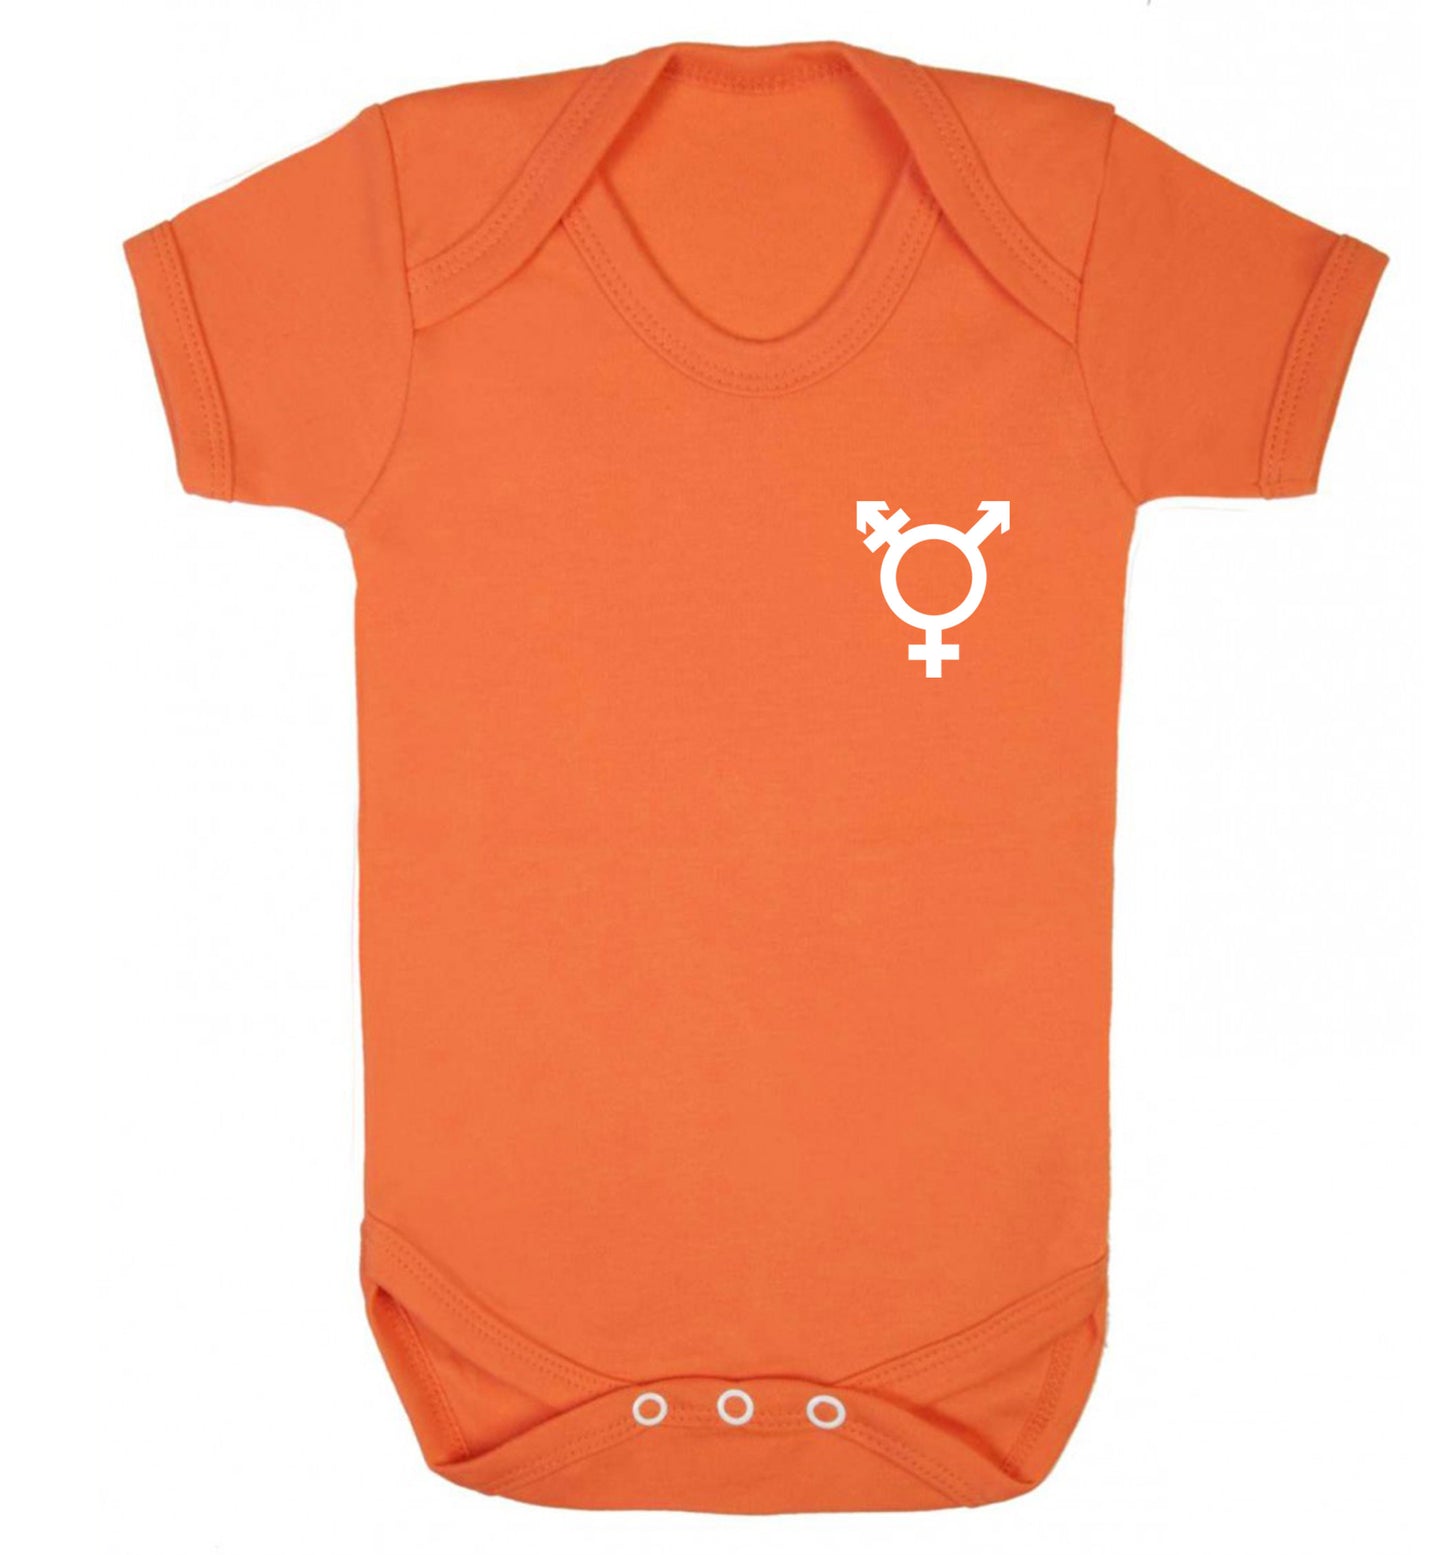 Trans gender symbol pocket Baby Vest orange 18-24 months